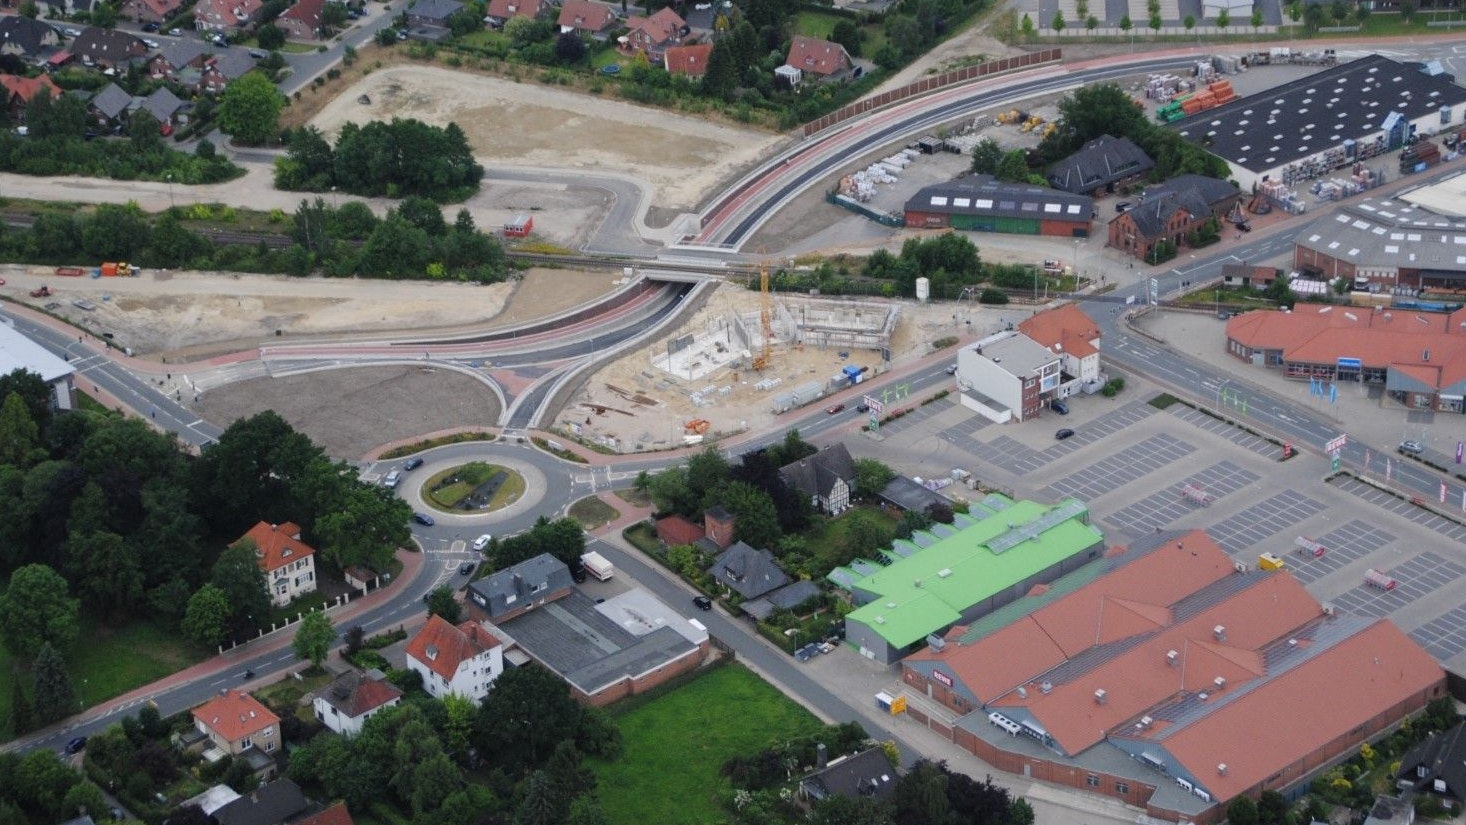 Aufwendiges Projekt: Der Bau der Entlastungsstraße Vechta-West ging im Frühjahr 2015 in die finale Phase. Zu diesem Zeitpunkt war das Trogbauwerk unterhalb der Bahntrasse fast fertiggestellt. Bereits im Jahr 2010 wurden die beiden Kreisel auf der Falkenrotter Straße angelegt. Archivfoto: Hartjens